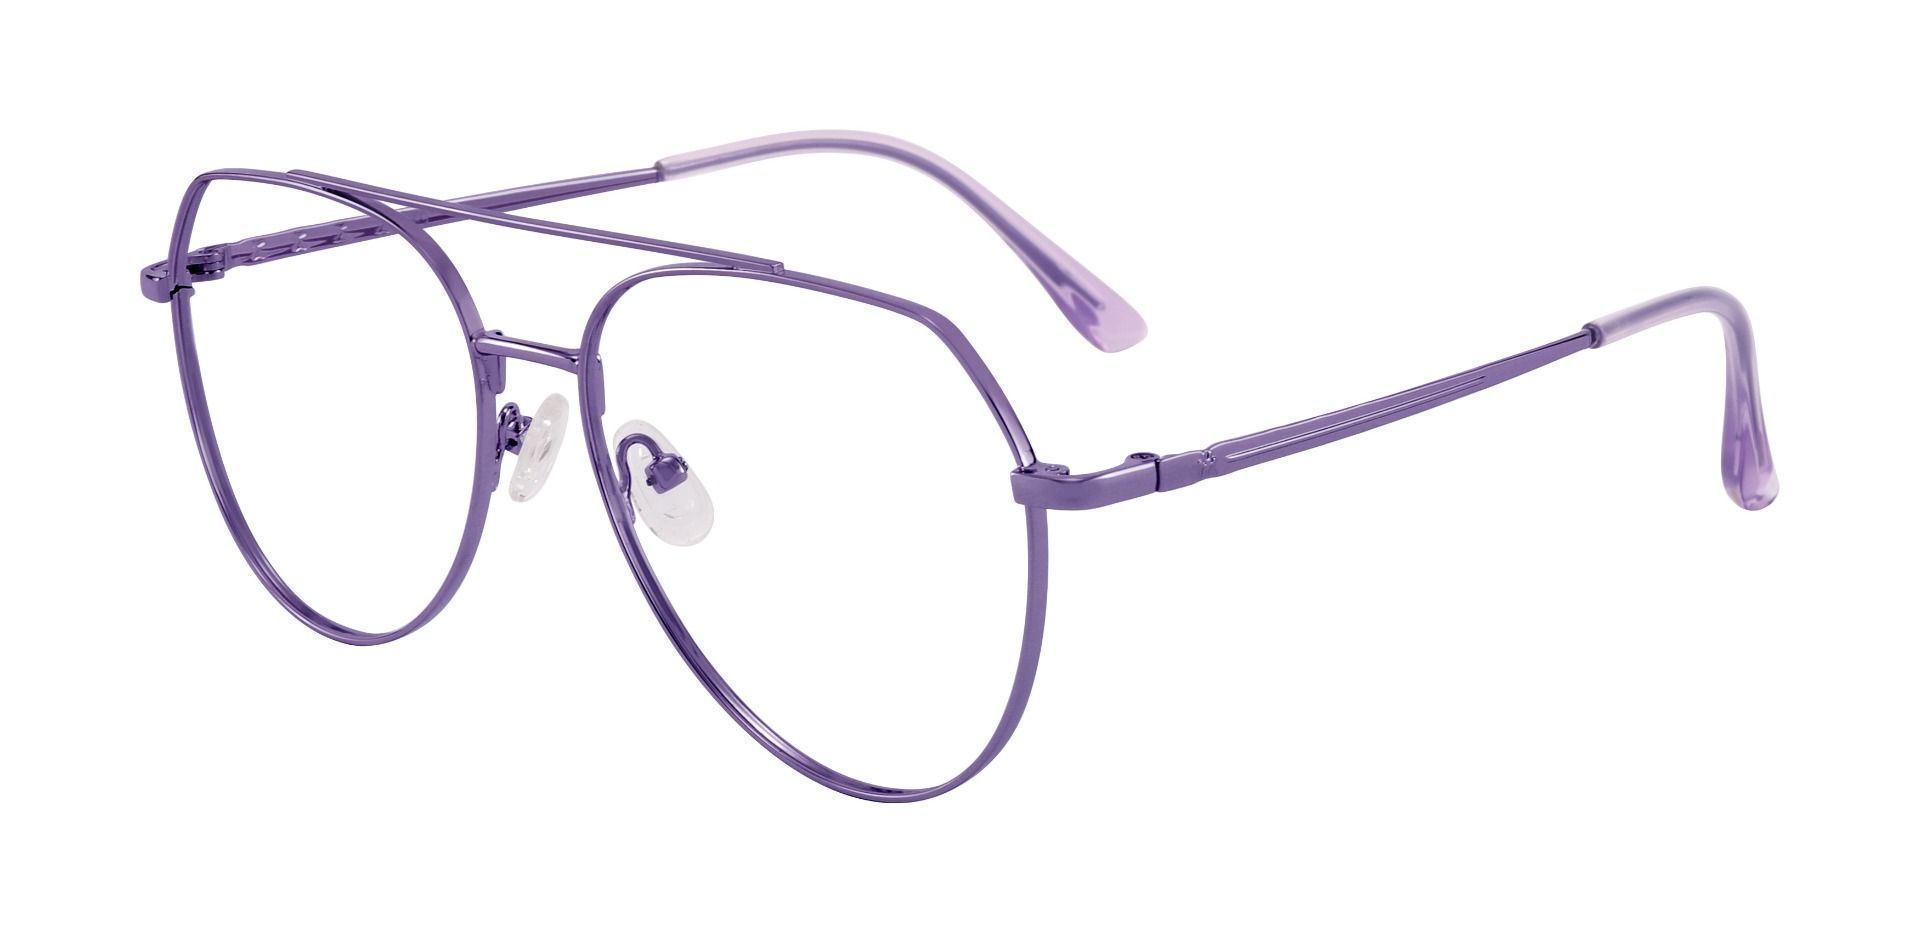 Wexford Aviator Prescription Glasses - Purple